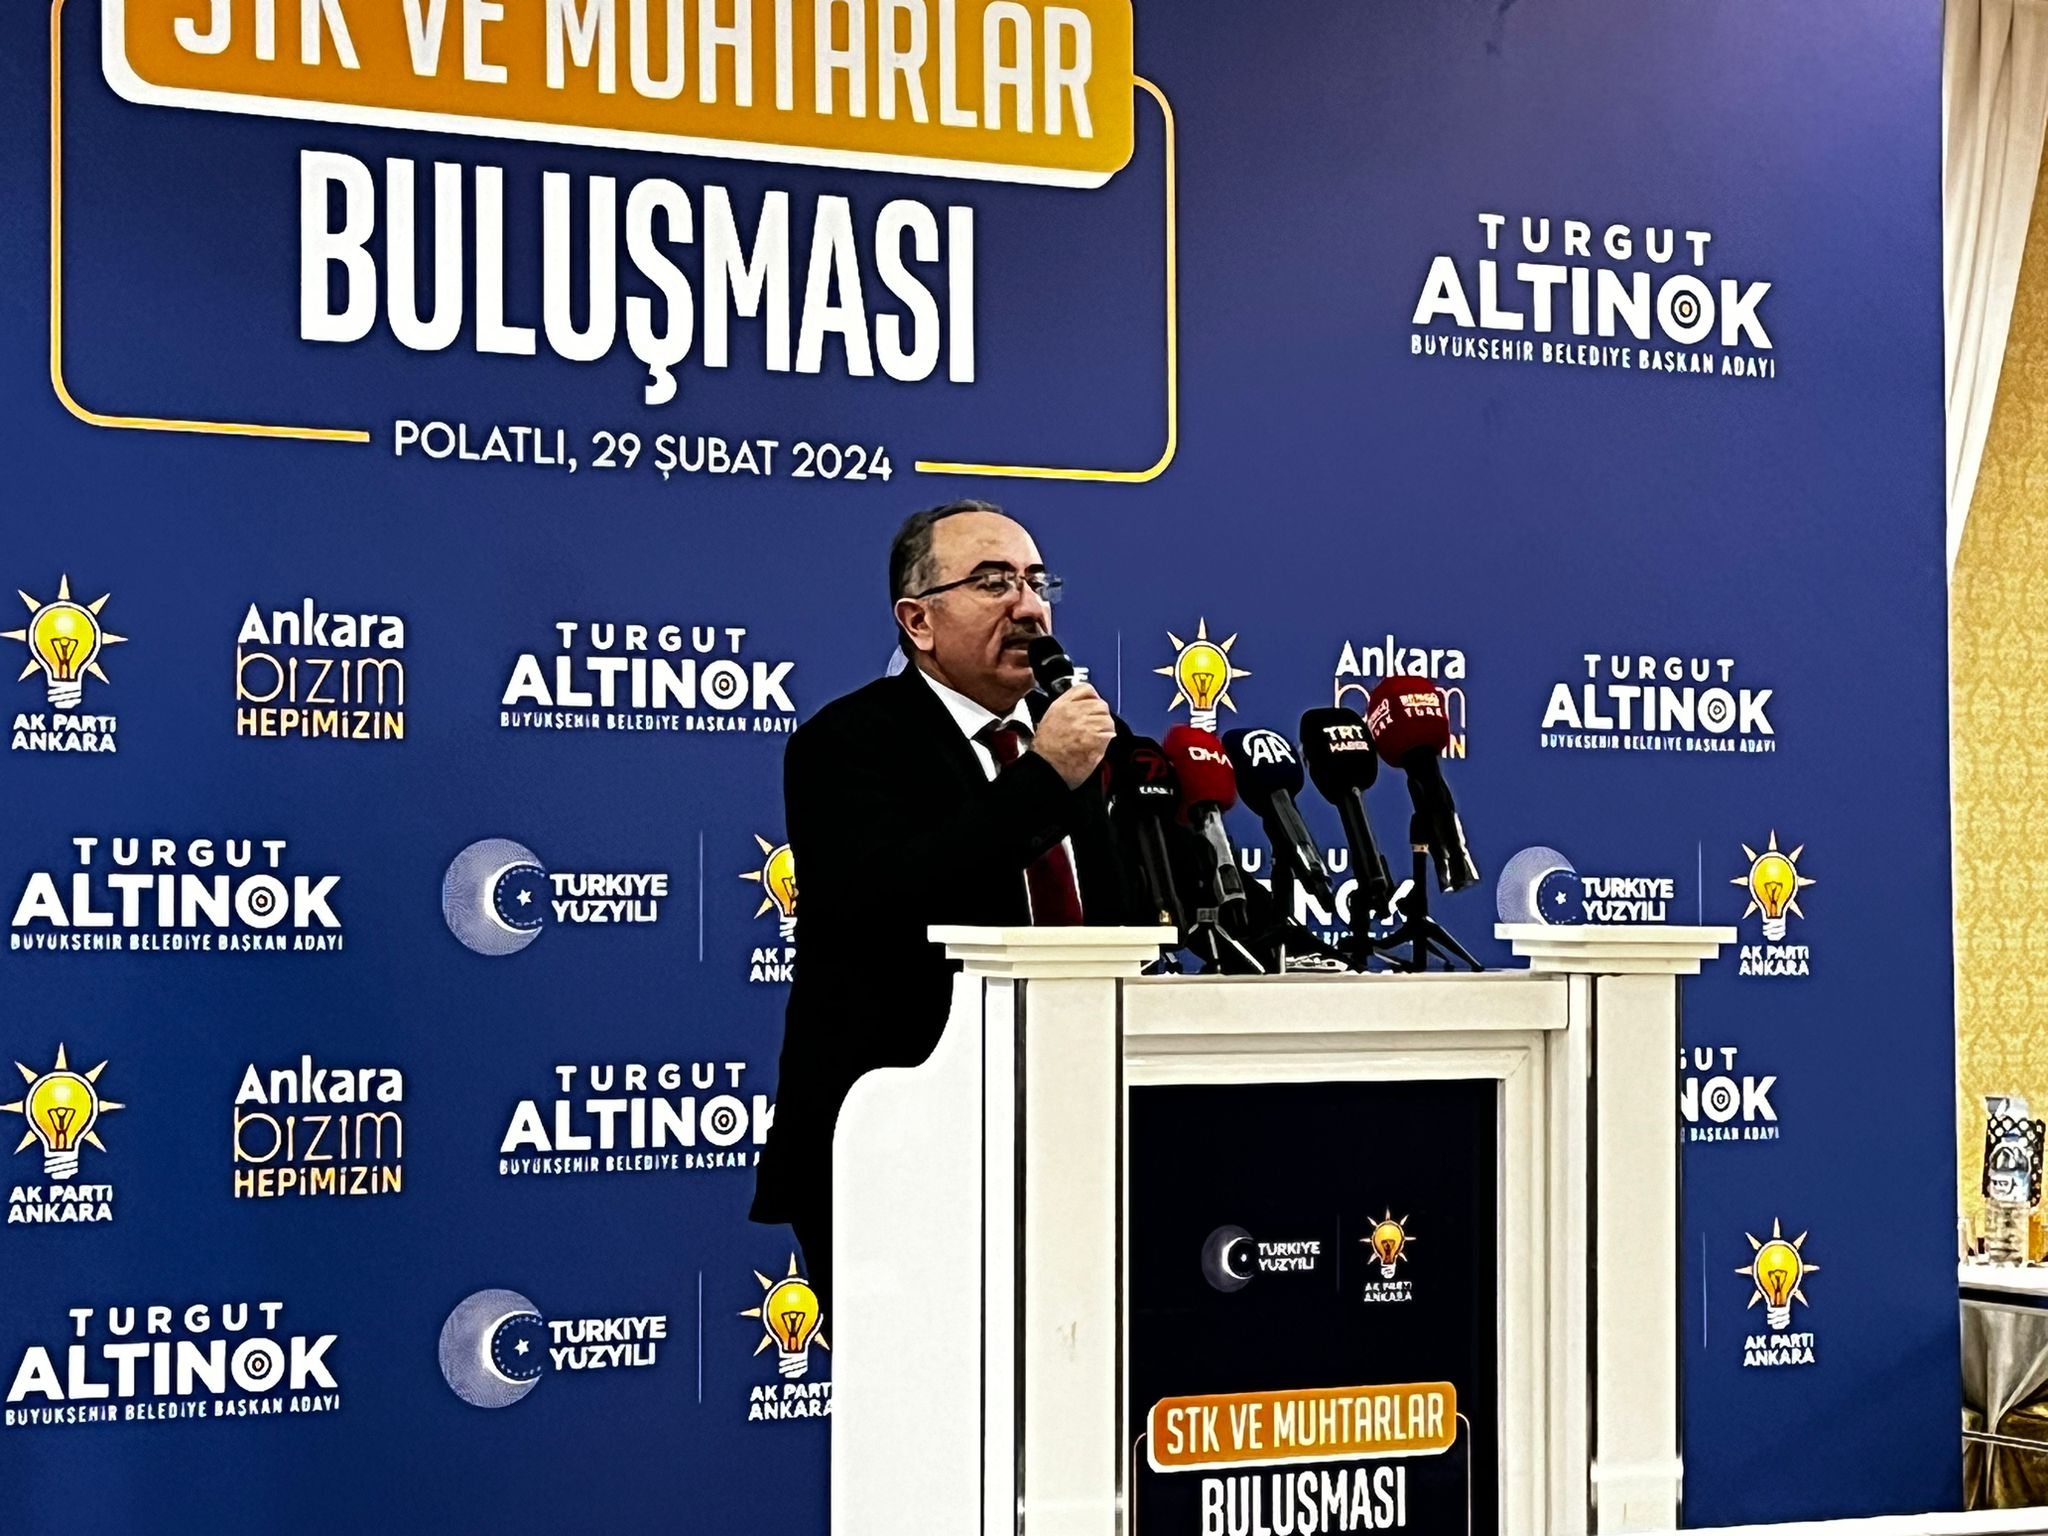 Cumhur İttifakı Ankara Büyükşehir Belediye Başkanı Altınok Polatlı'da Stk Ve Muhtarlarla Buluştu (3)